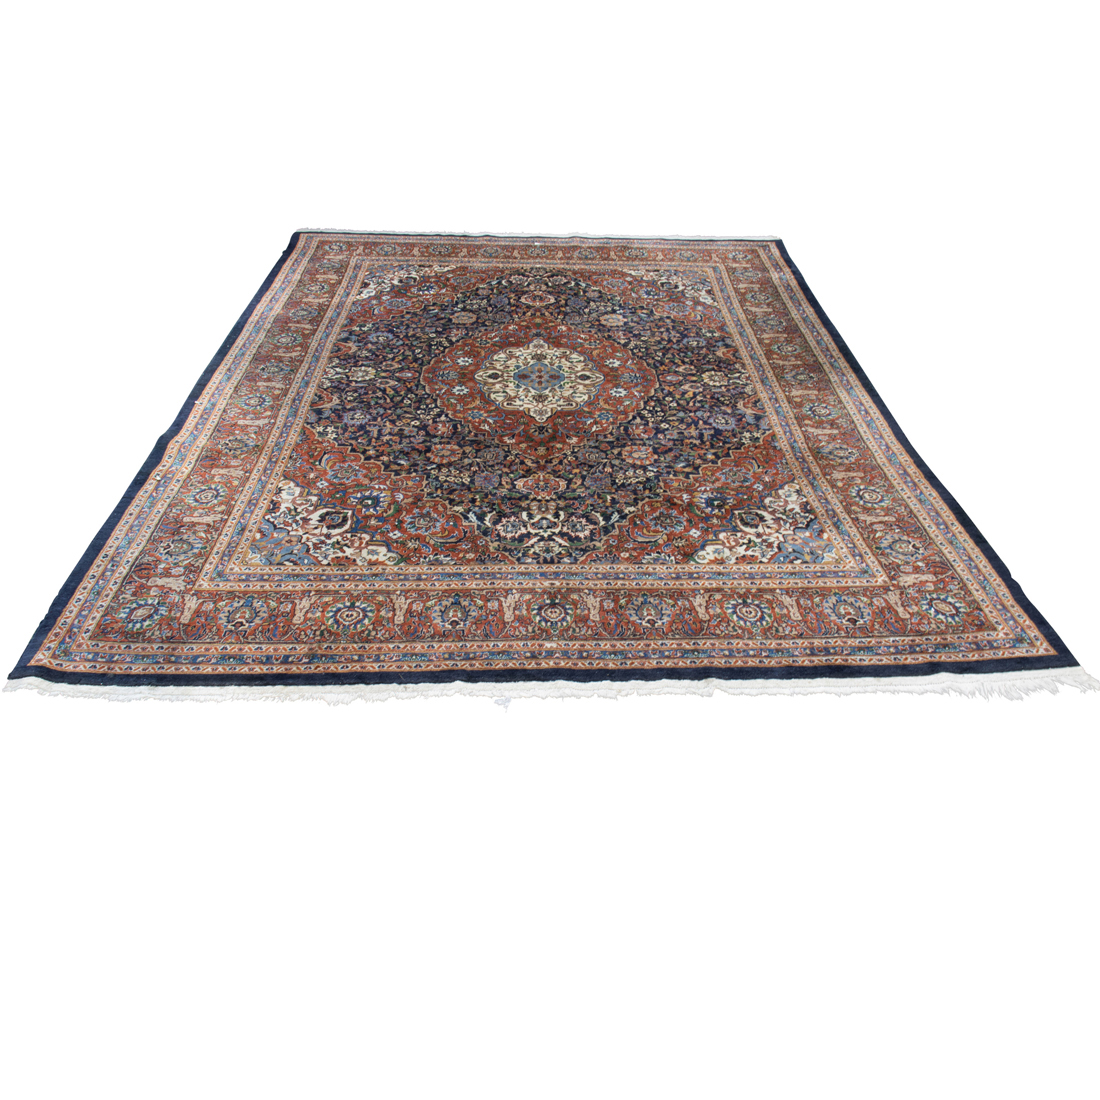 INDO-TABRIZ CARPET An Indo-Tabriz carpet,